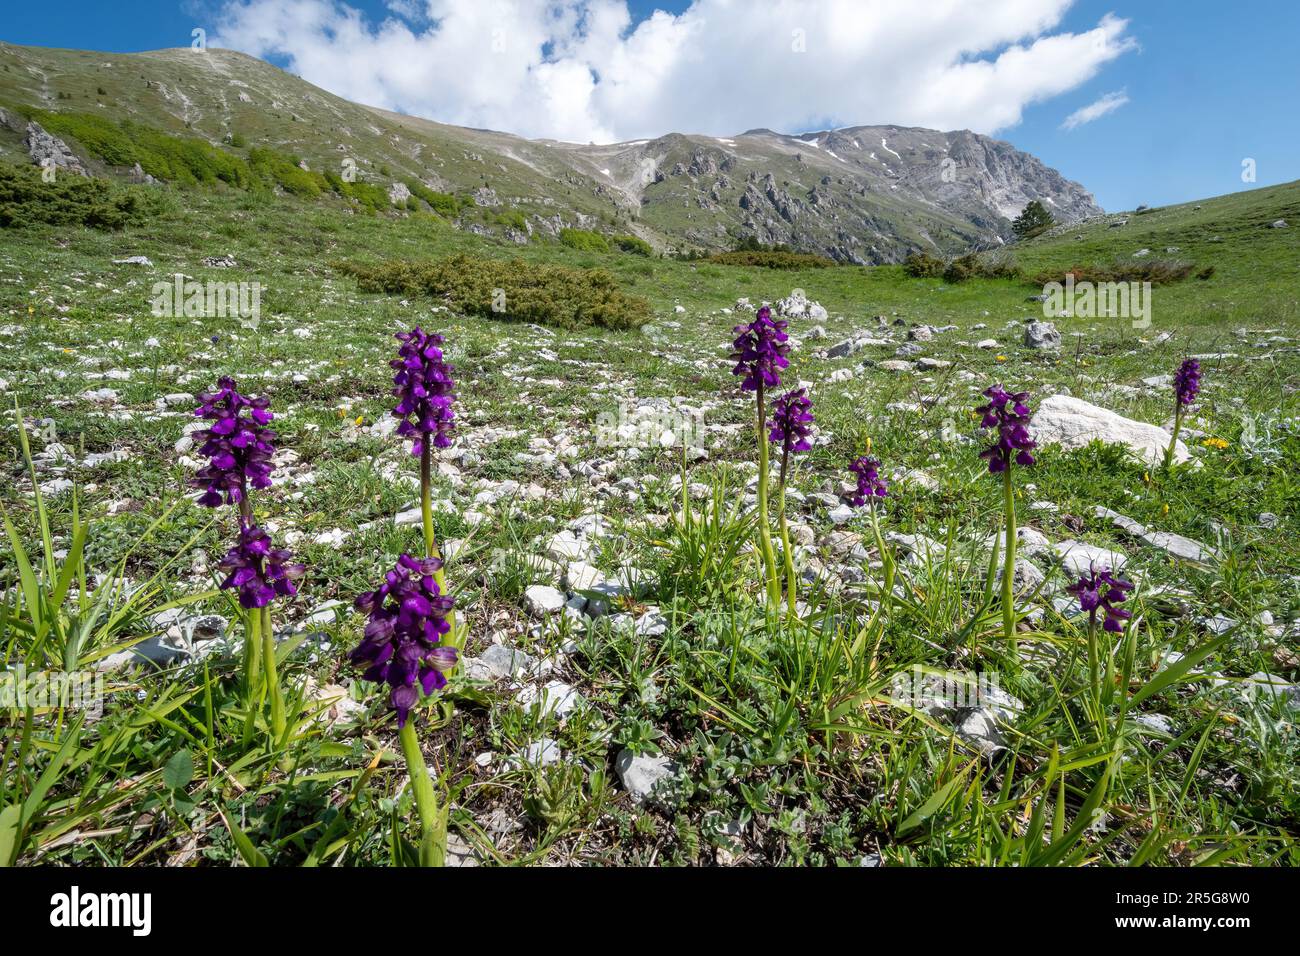 Grünflügelorchideen (Anacamptis morio) in der natürlichen Landschaft der Apenninen, Mittelitalien, Europa, im Mai Stockfoto